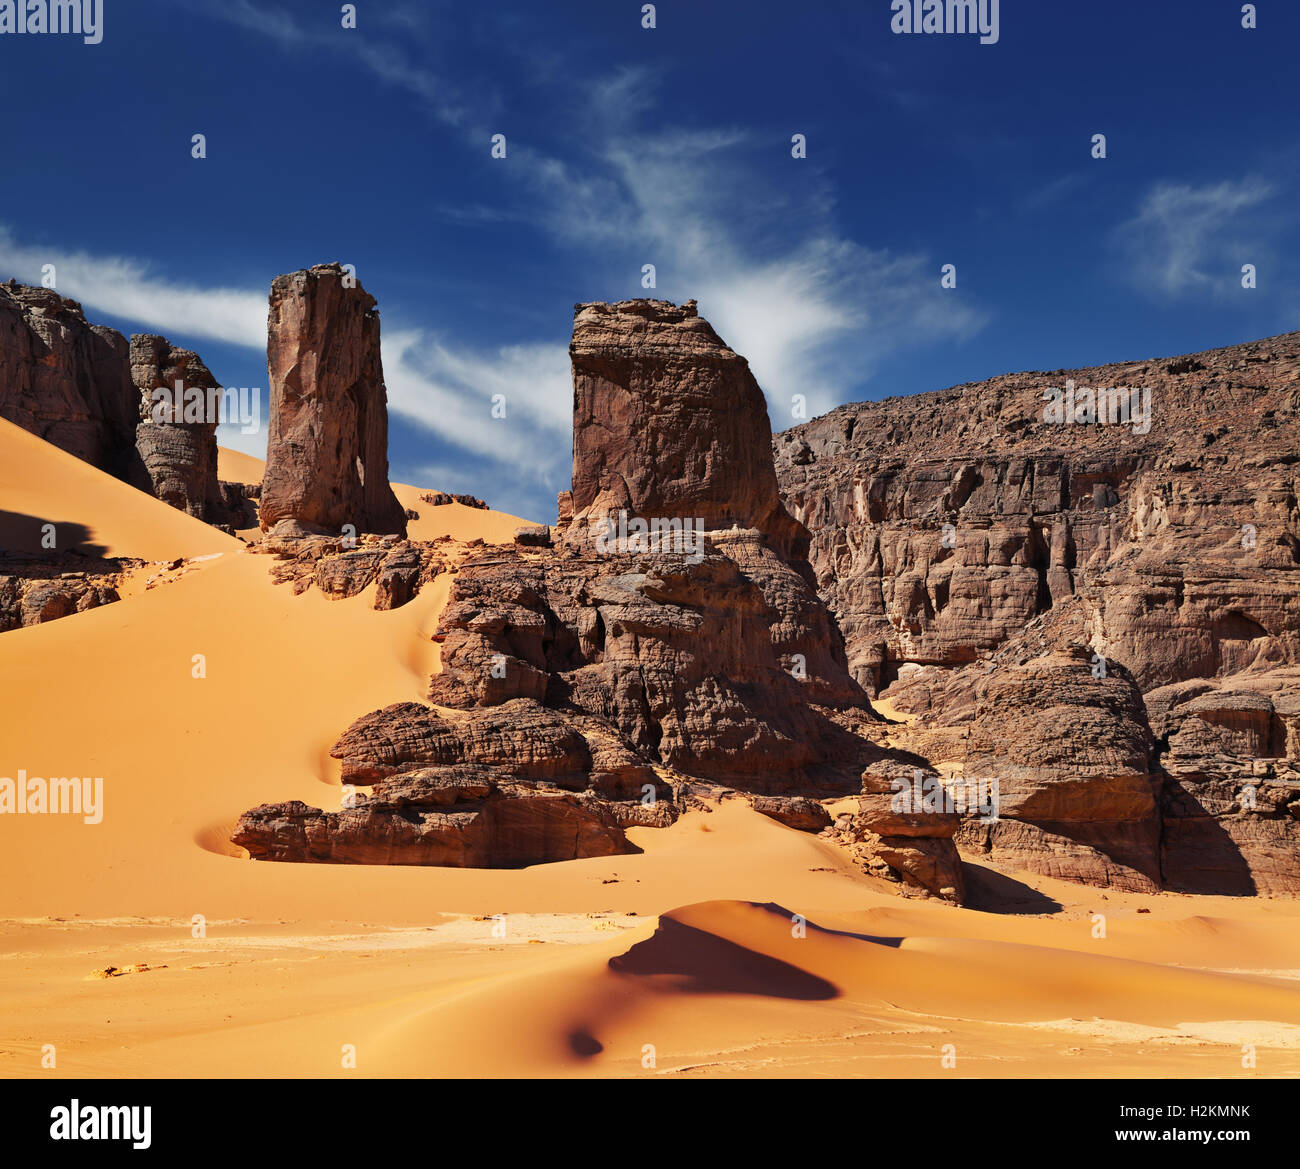 Dunas de arena y rocas, el desierto del Sahara, Argelia Foto de stock